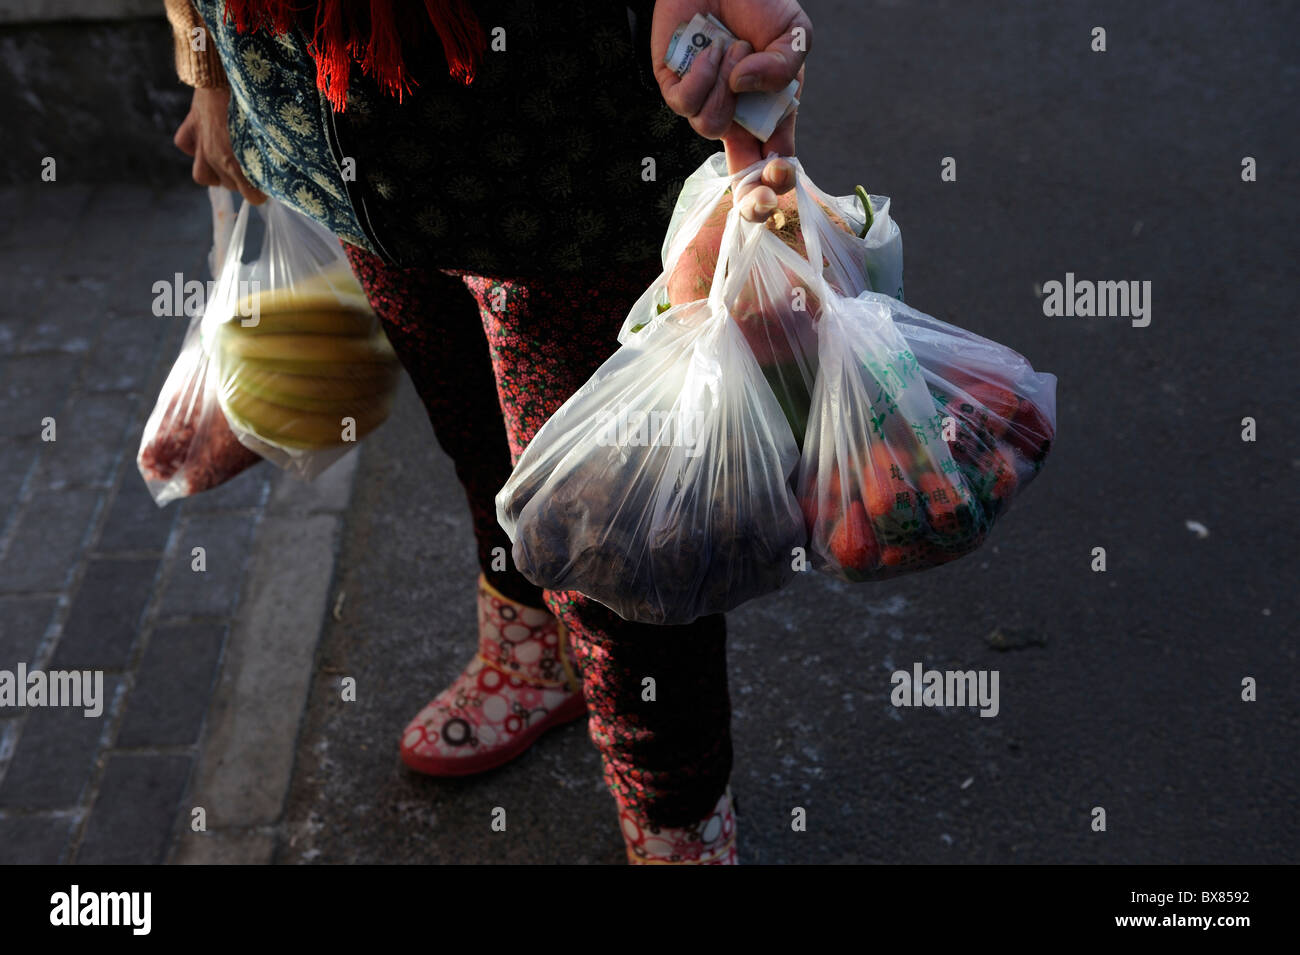 Una mujer lleva las bolsas del supermercado de vuelta a casa después de ir de compras en un mercado de Pekín, China.11-Dec-2010 Foto de stock